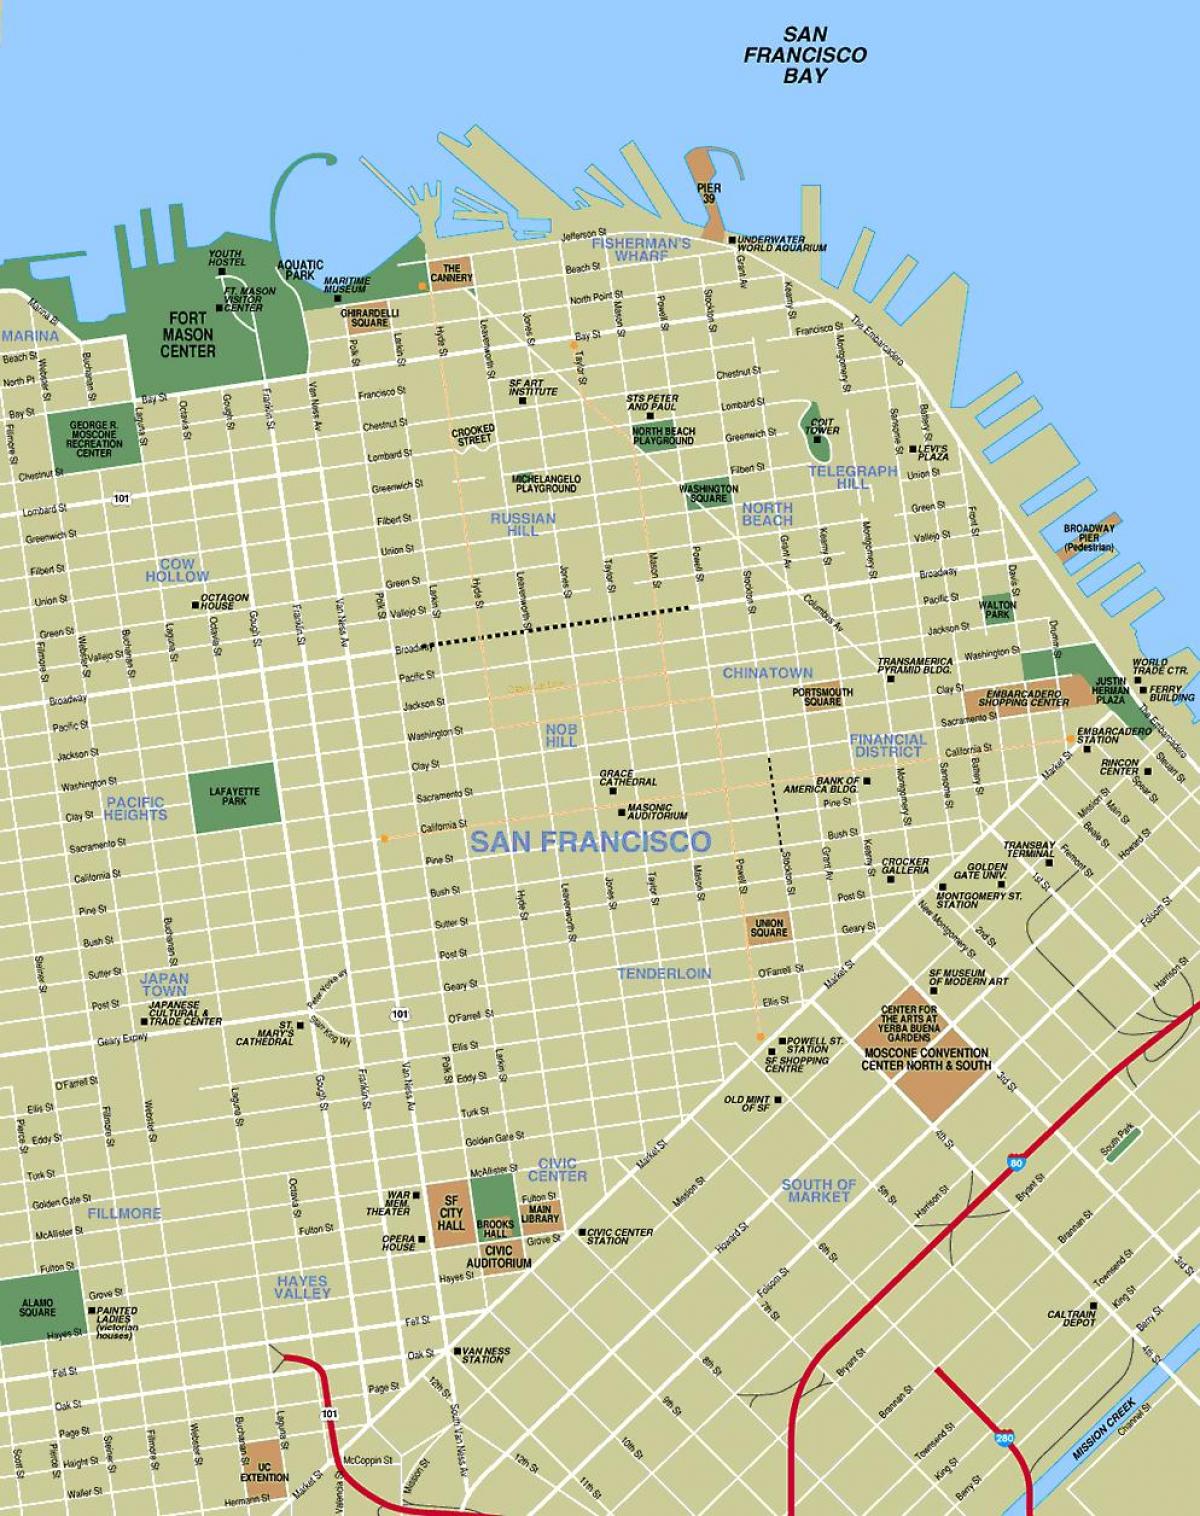 χάρτης της πόλης του Σαν Φρανσίσκο, ca